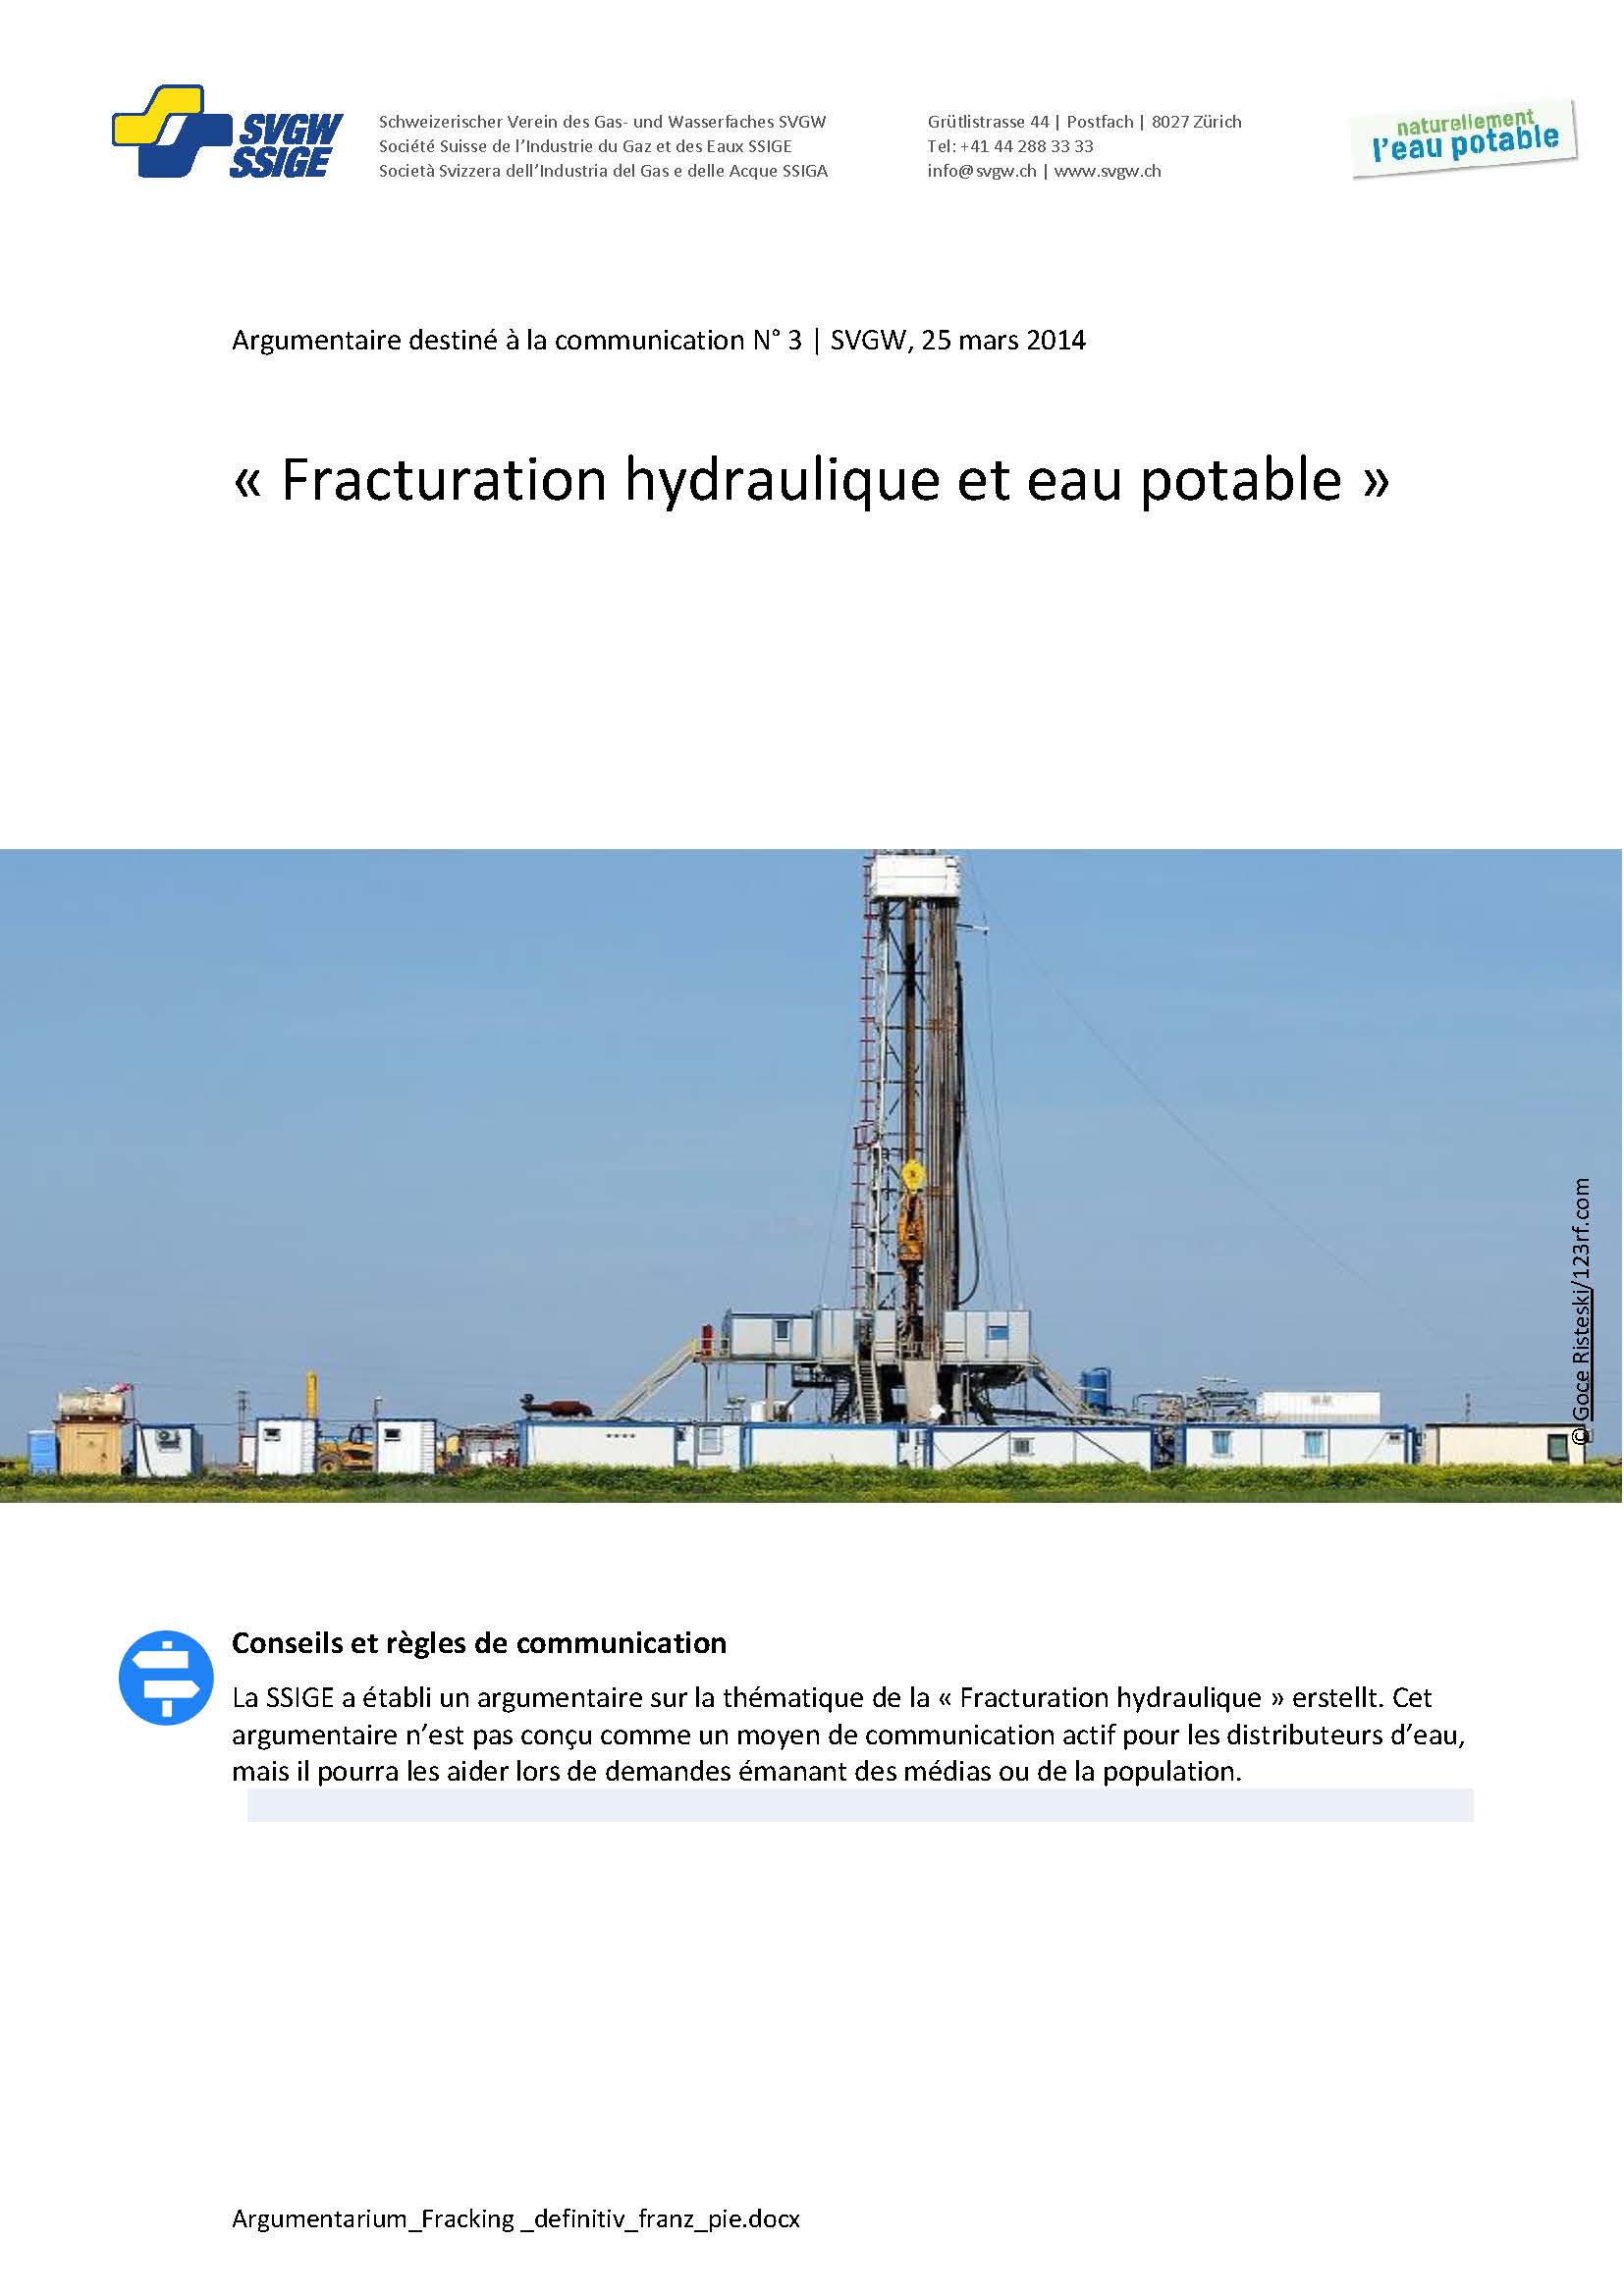 Argumentaire: «Fracturation hydraulique et eau potable»